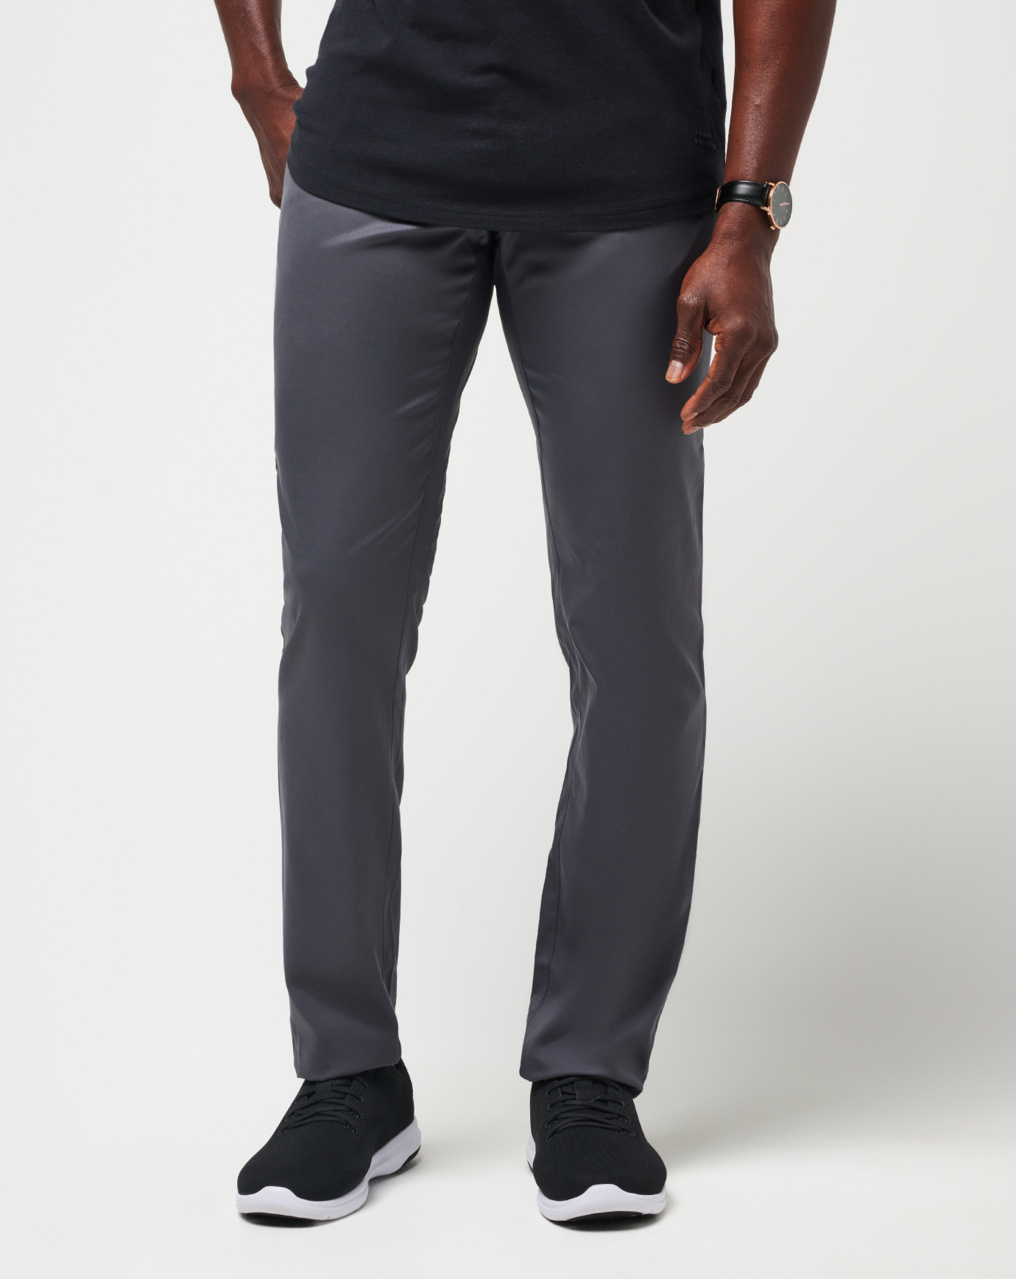 Size 13 Tech Pants Men Casual Versatile Fashion Trousers Pant Pants Soild  Color Slim Fit Small Feet Suit Trousers 